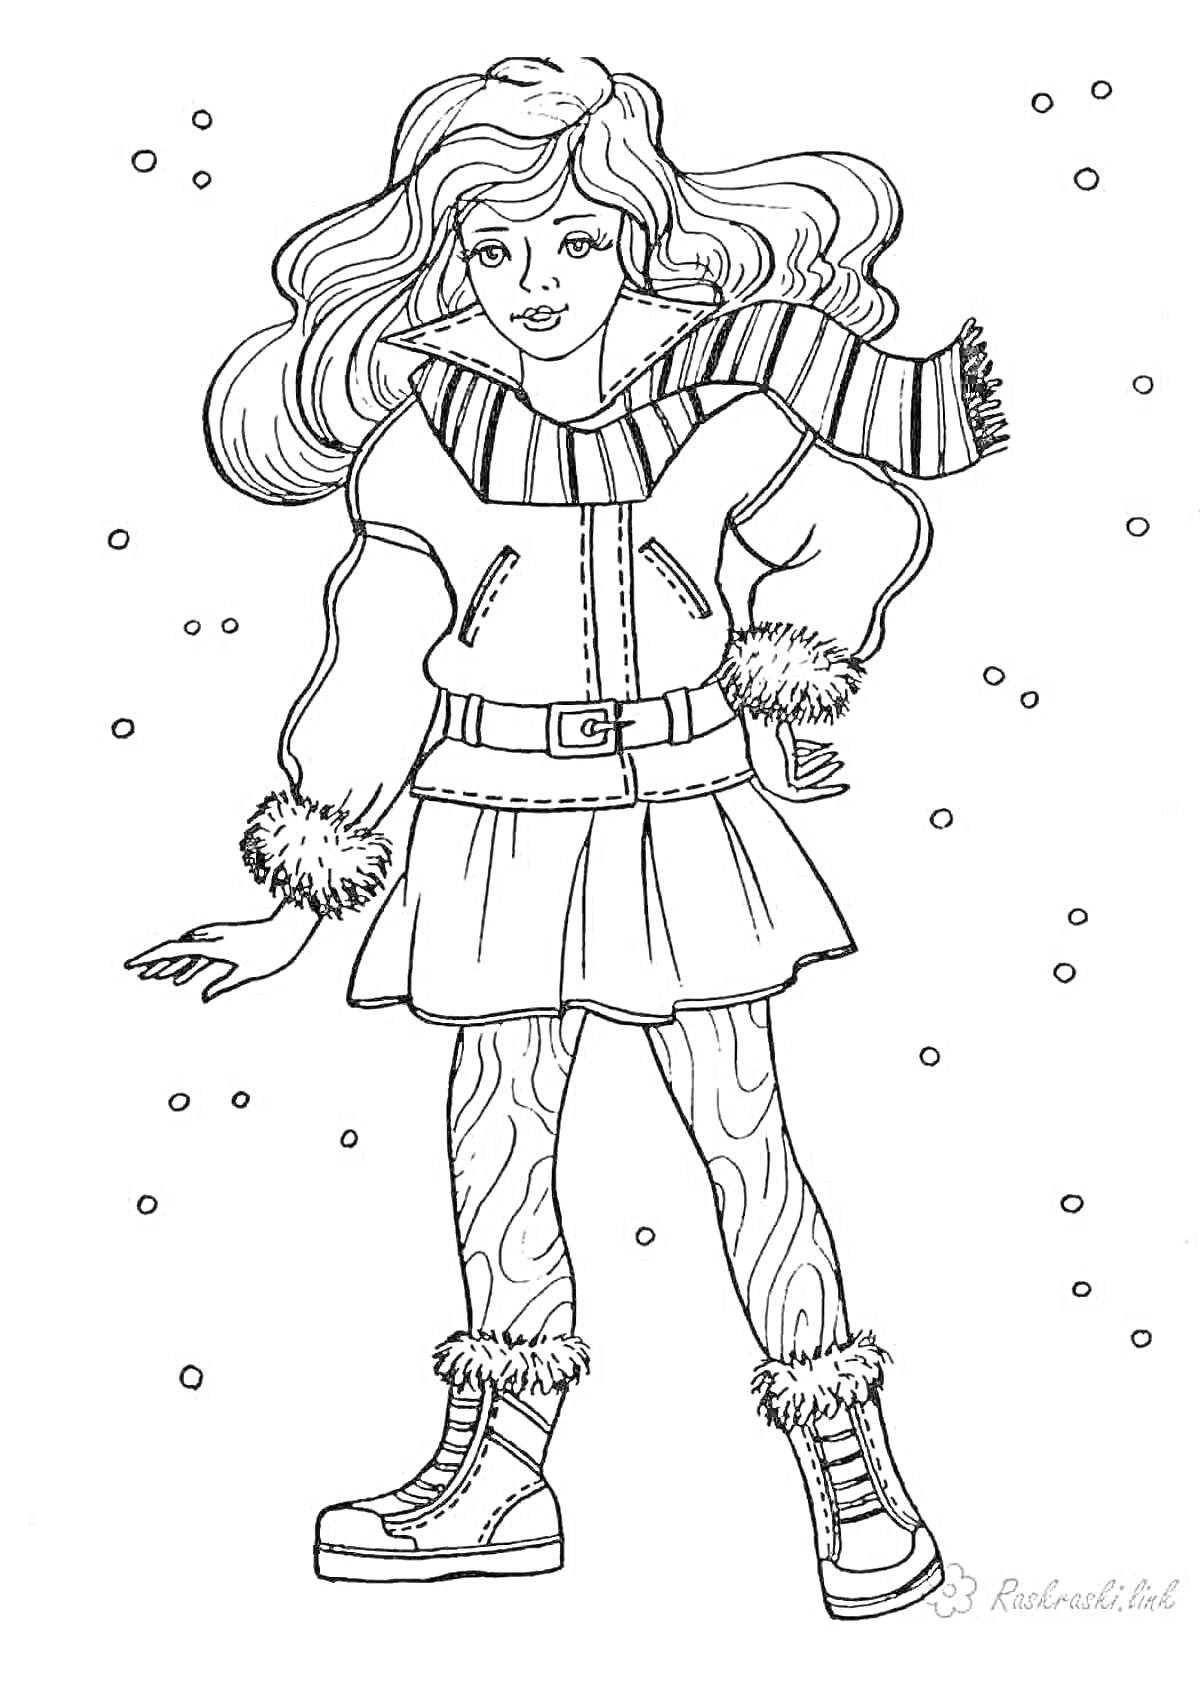 Раскраска Кукла в зимней куртке с меховыми манжетами, юбке, шарфе и сапогах с меховой отделкой, среди падающих снежинок